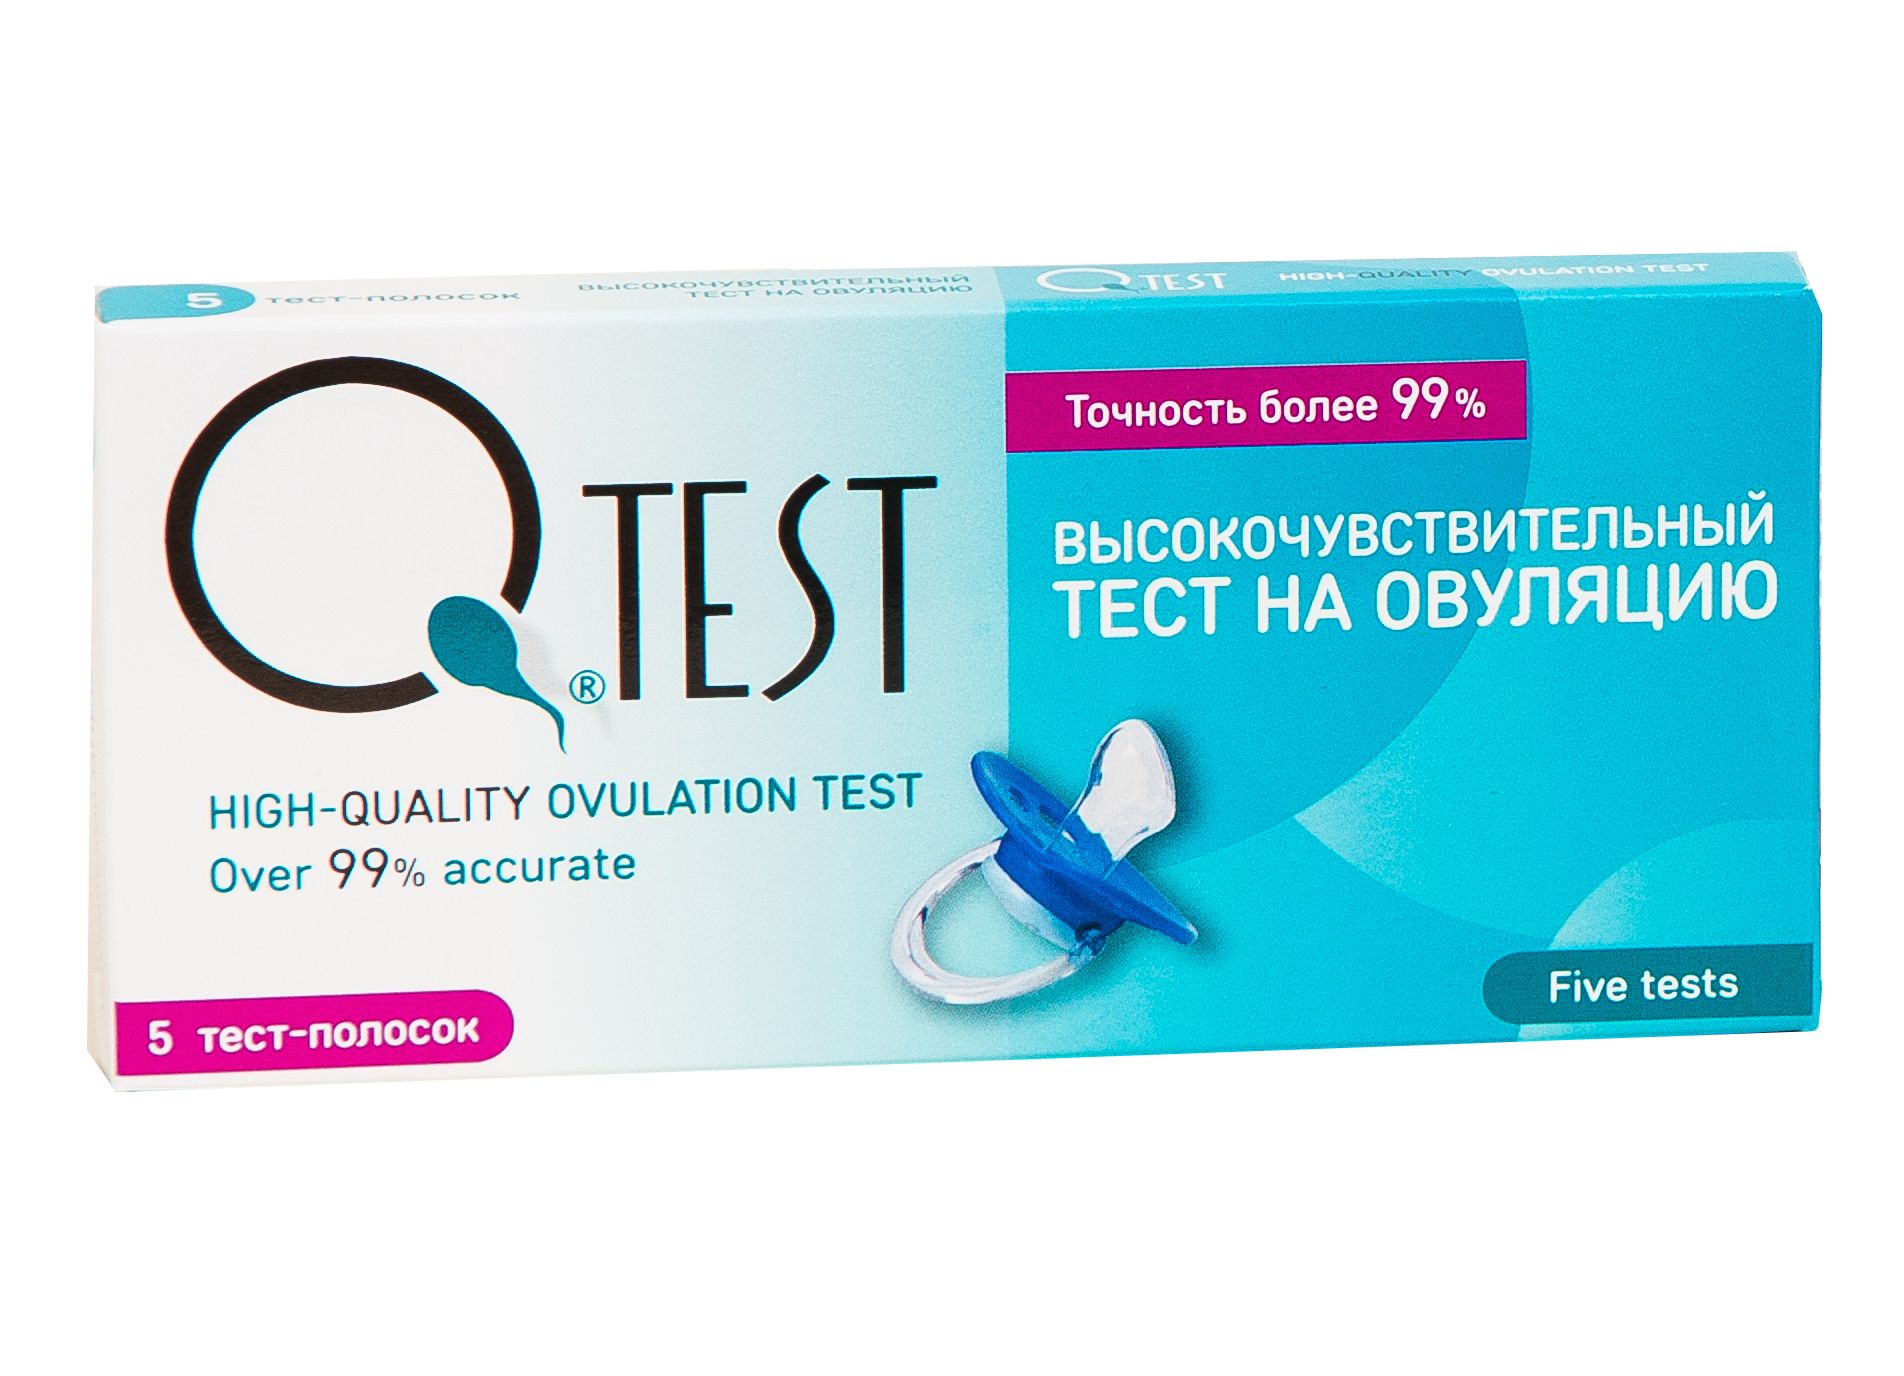 Купить тест с доставкой. Тест на беременность QTEST. Тест на овуляцию Фемиплан, 5 шт. Электронный тест на овуляцию. Тест на овуляцию цена.